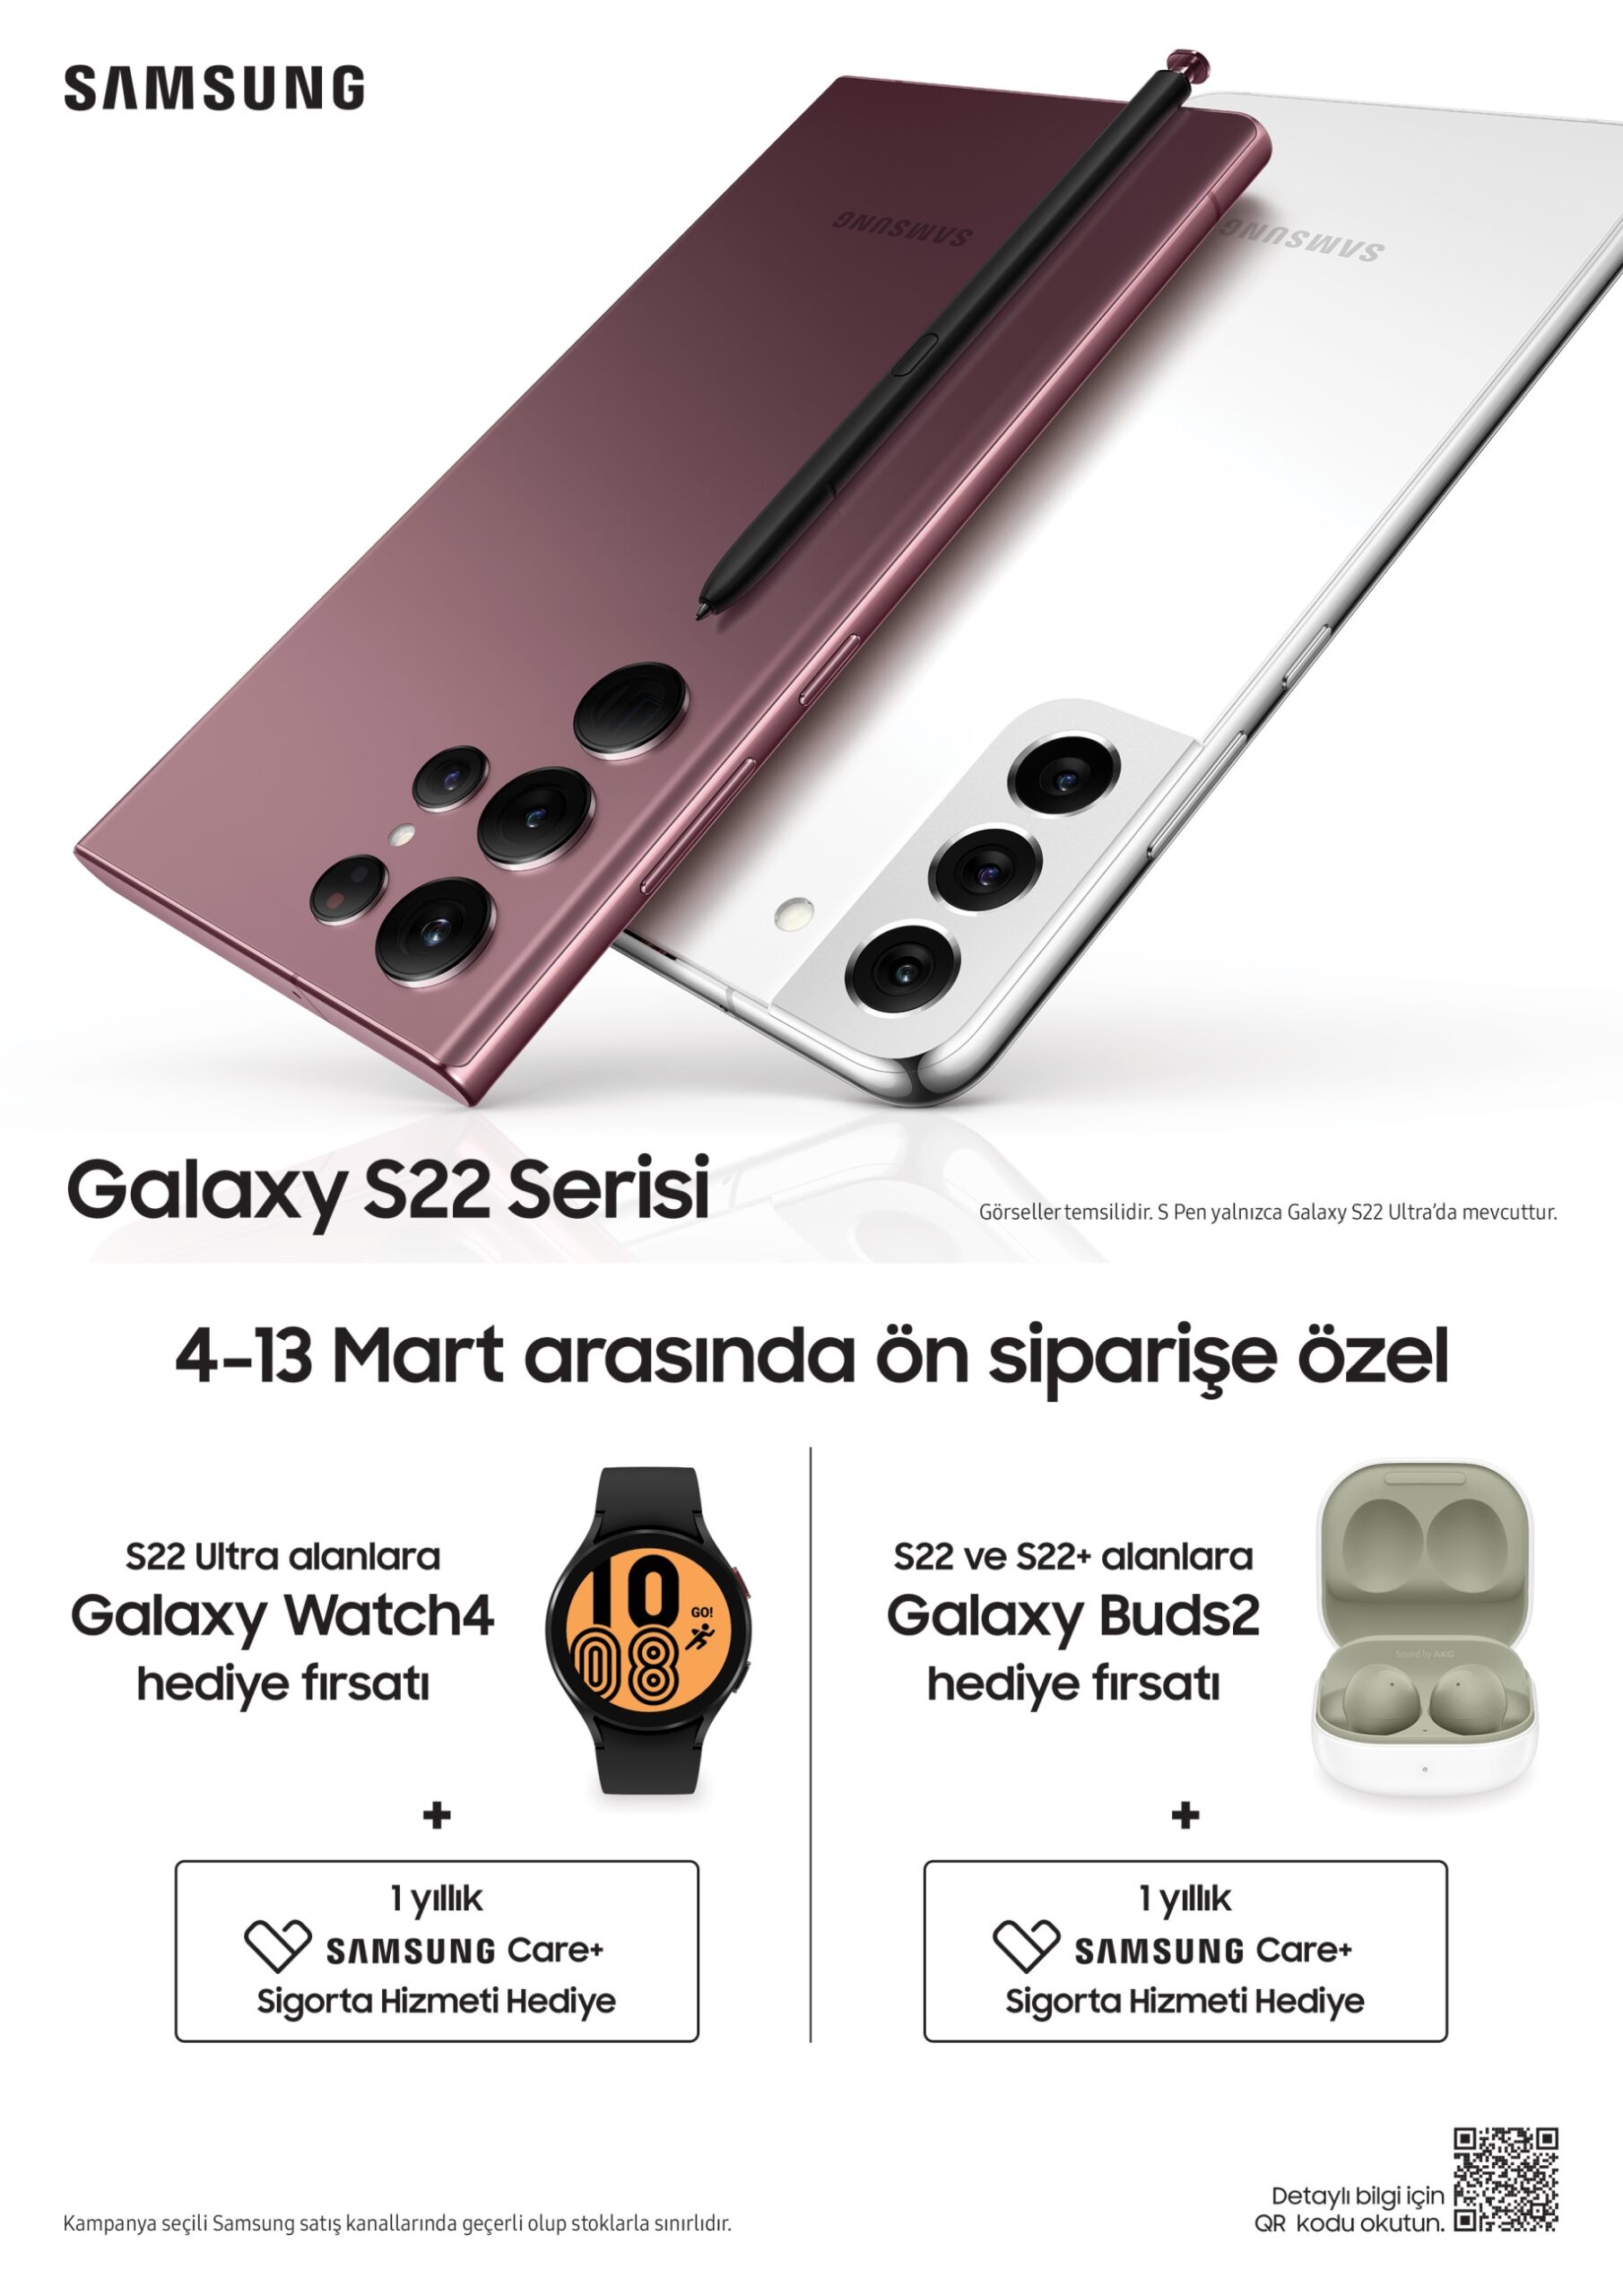 Yeni Samsung Galaxy S22 serisi, birbirinden özel teklif ve hediyelerle Türkiye’de ön satışa sunuldu!